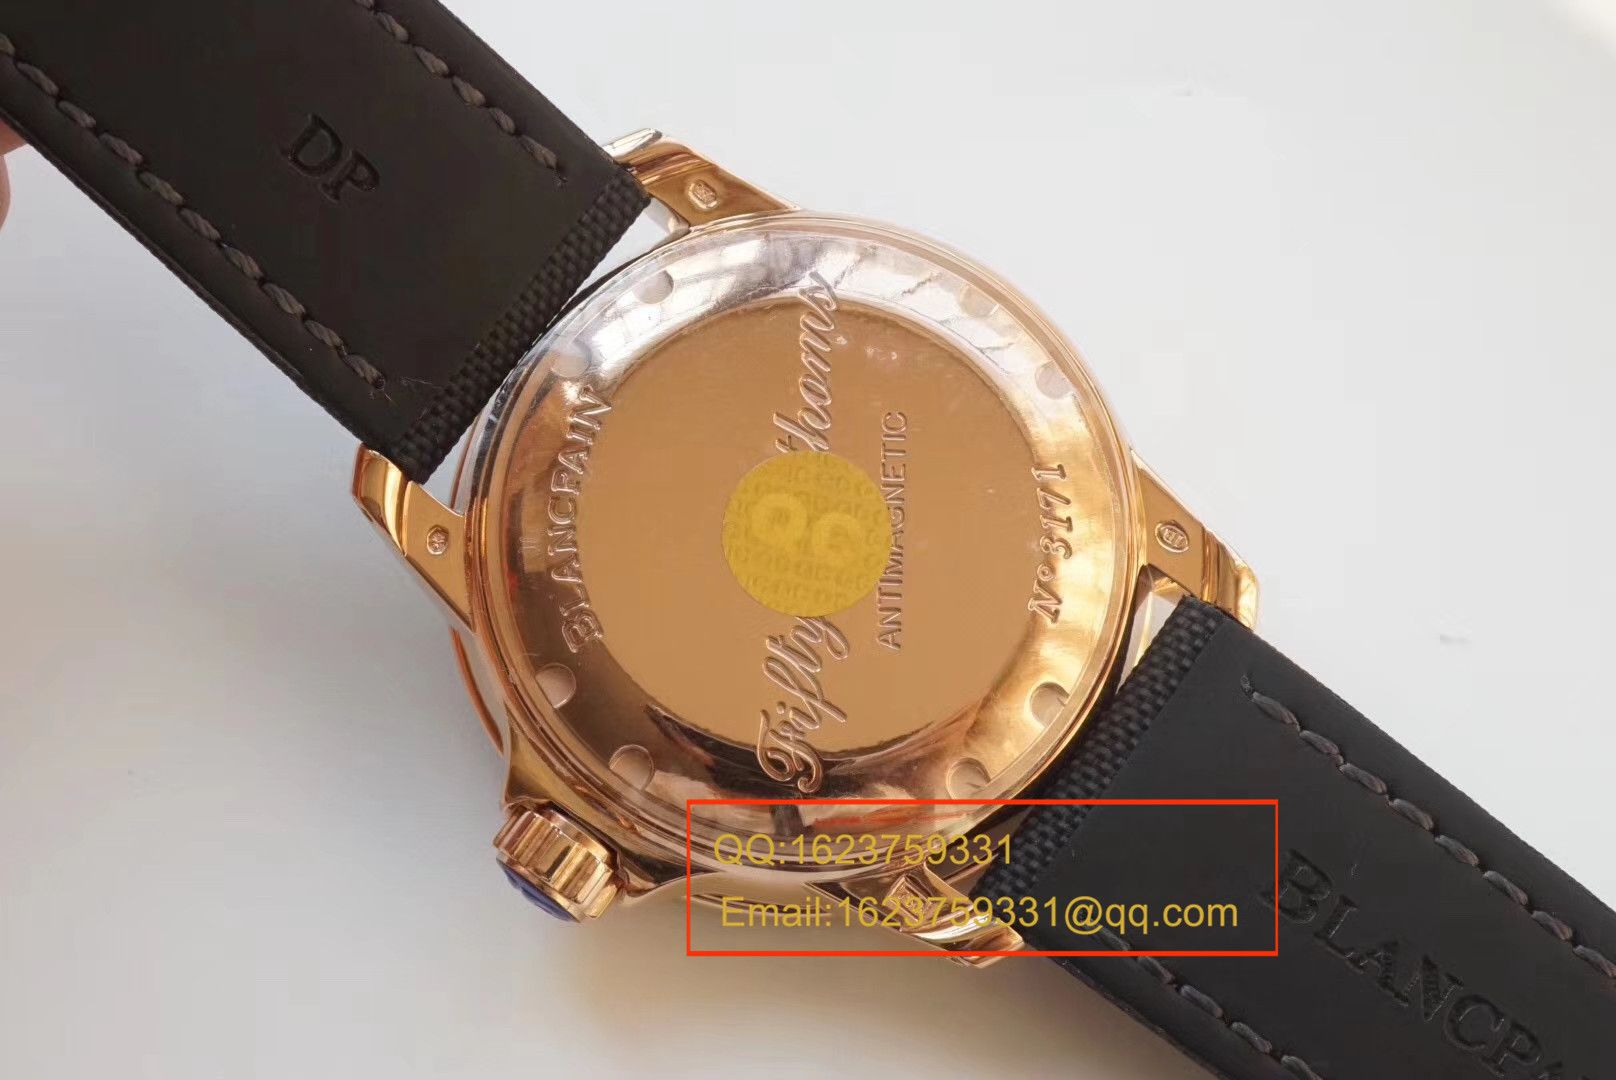 【ZF一比一超A高仿手表】宝珀 五十噚系列5015-3630-52 自动机械腕表 